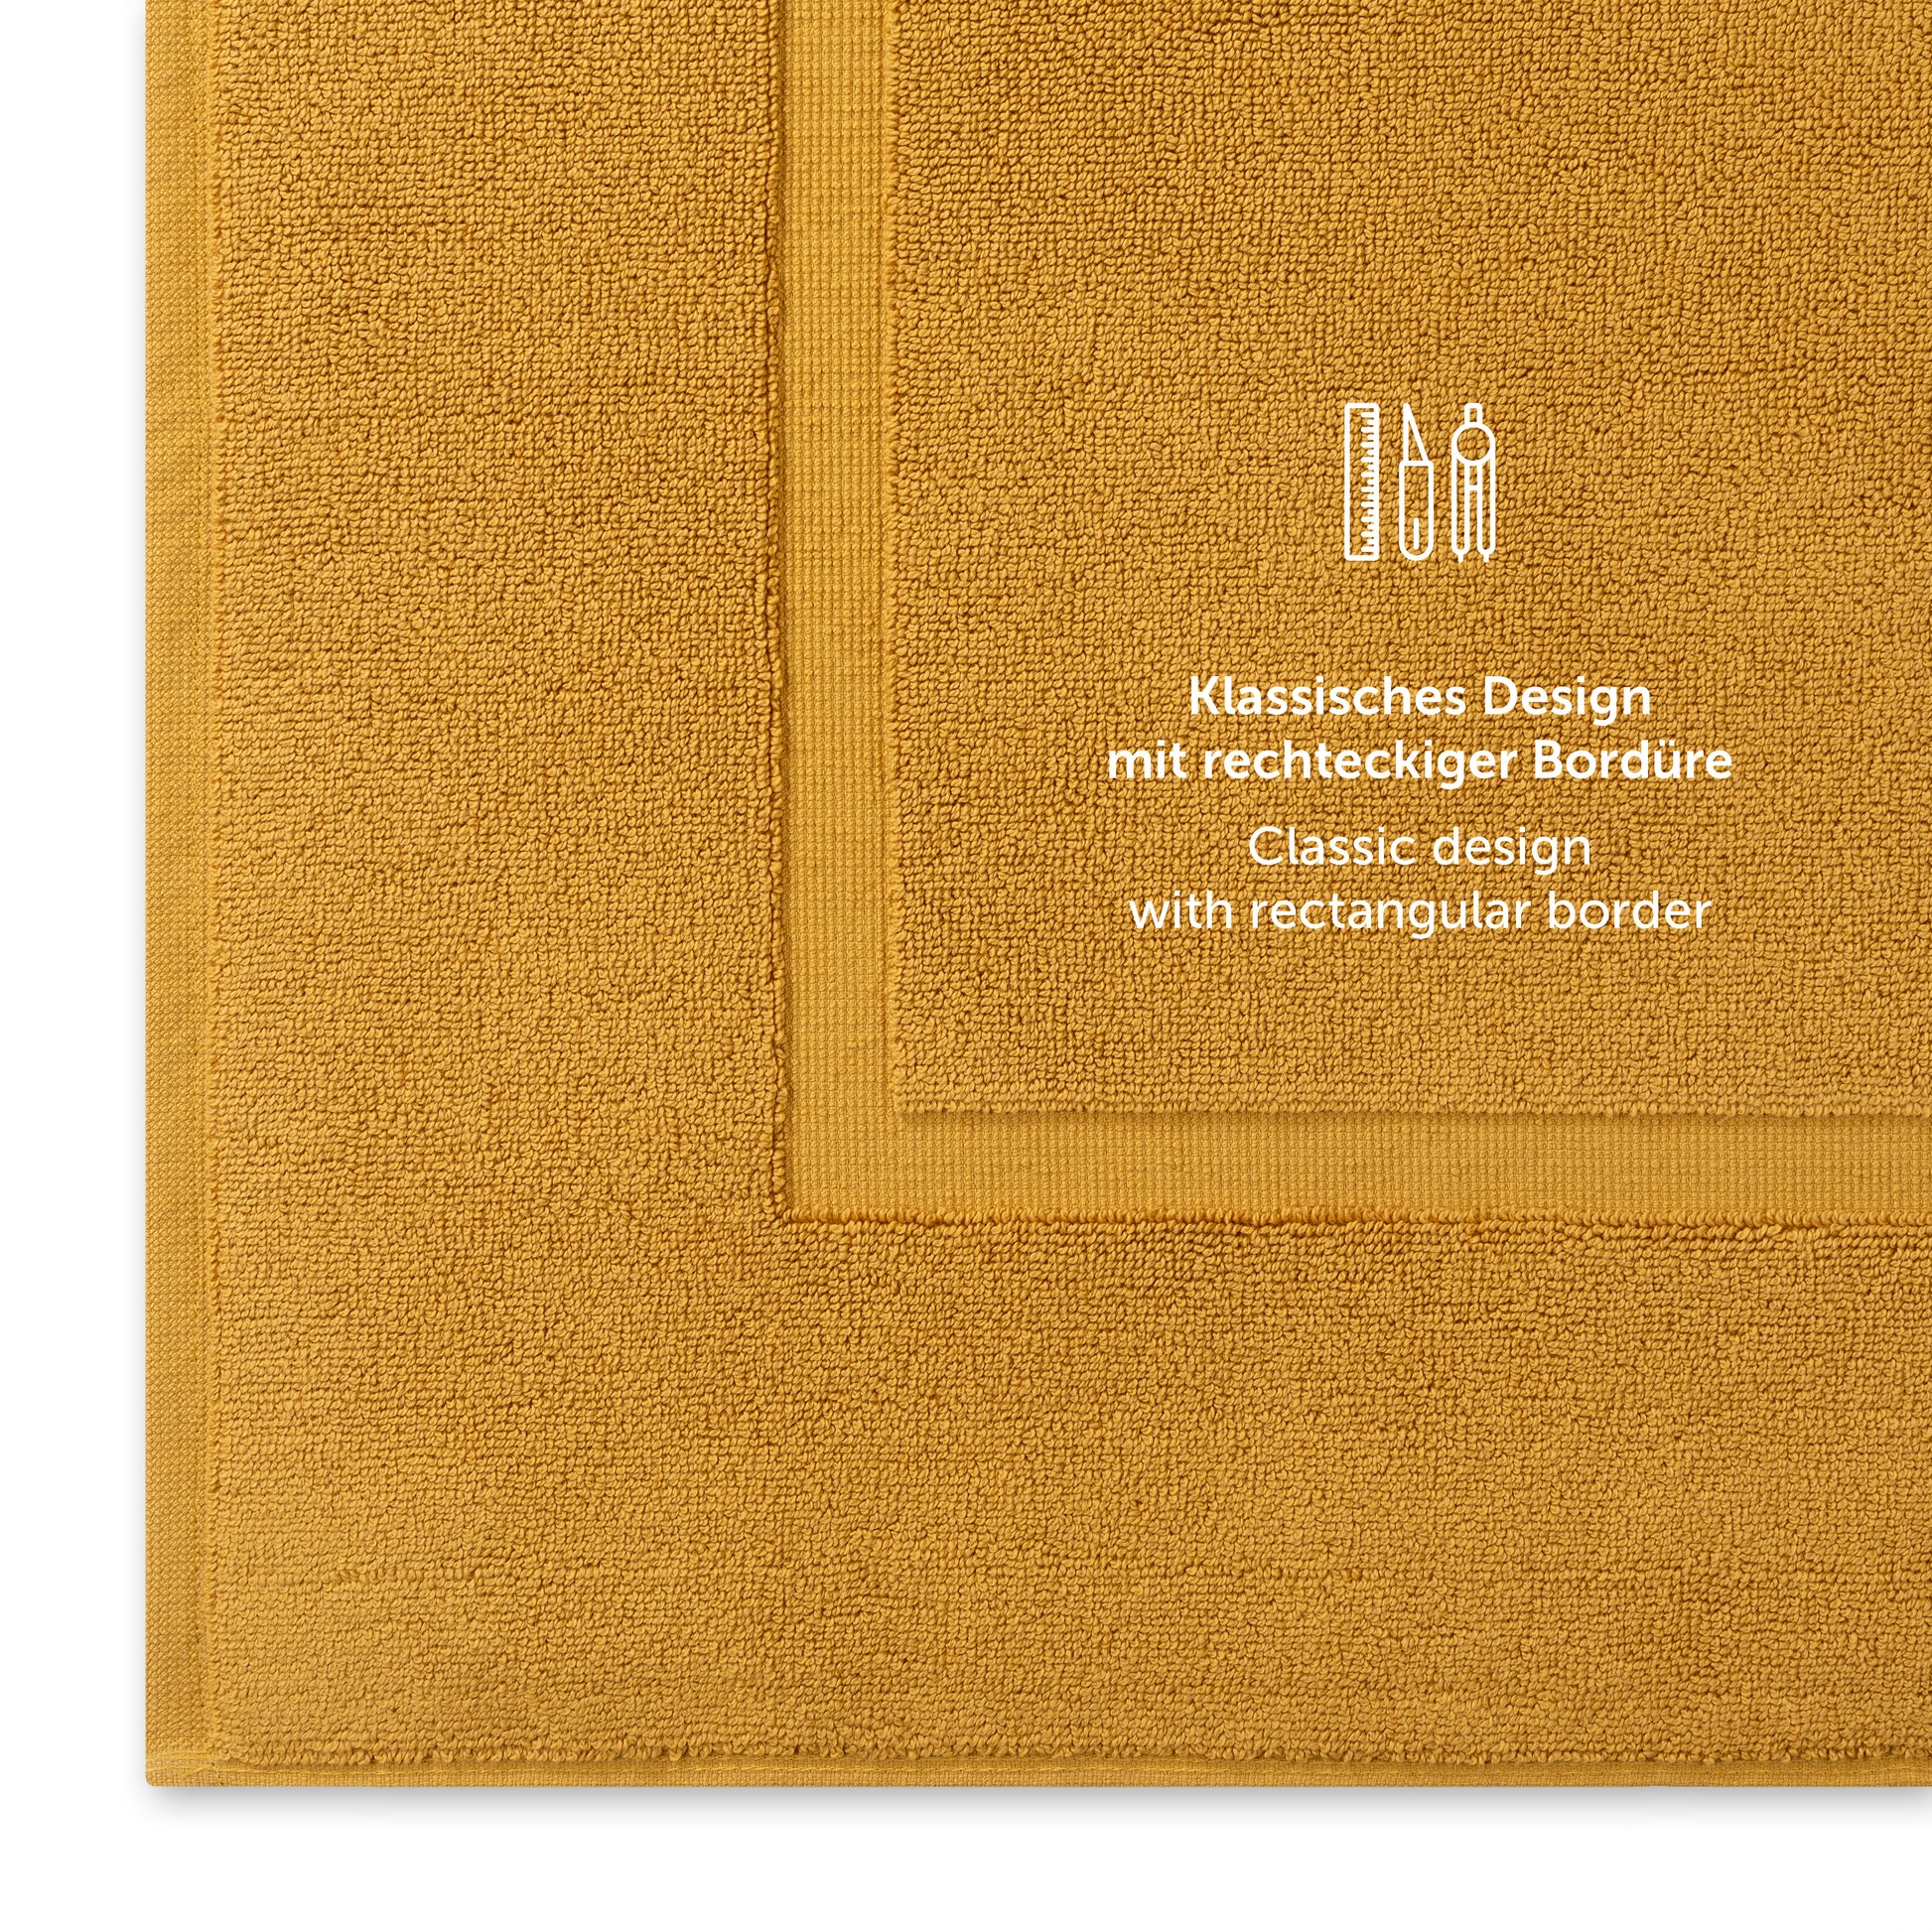 Gelbes Handtuch mit klassischem Design und Bordürendetail.